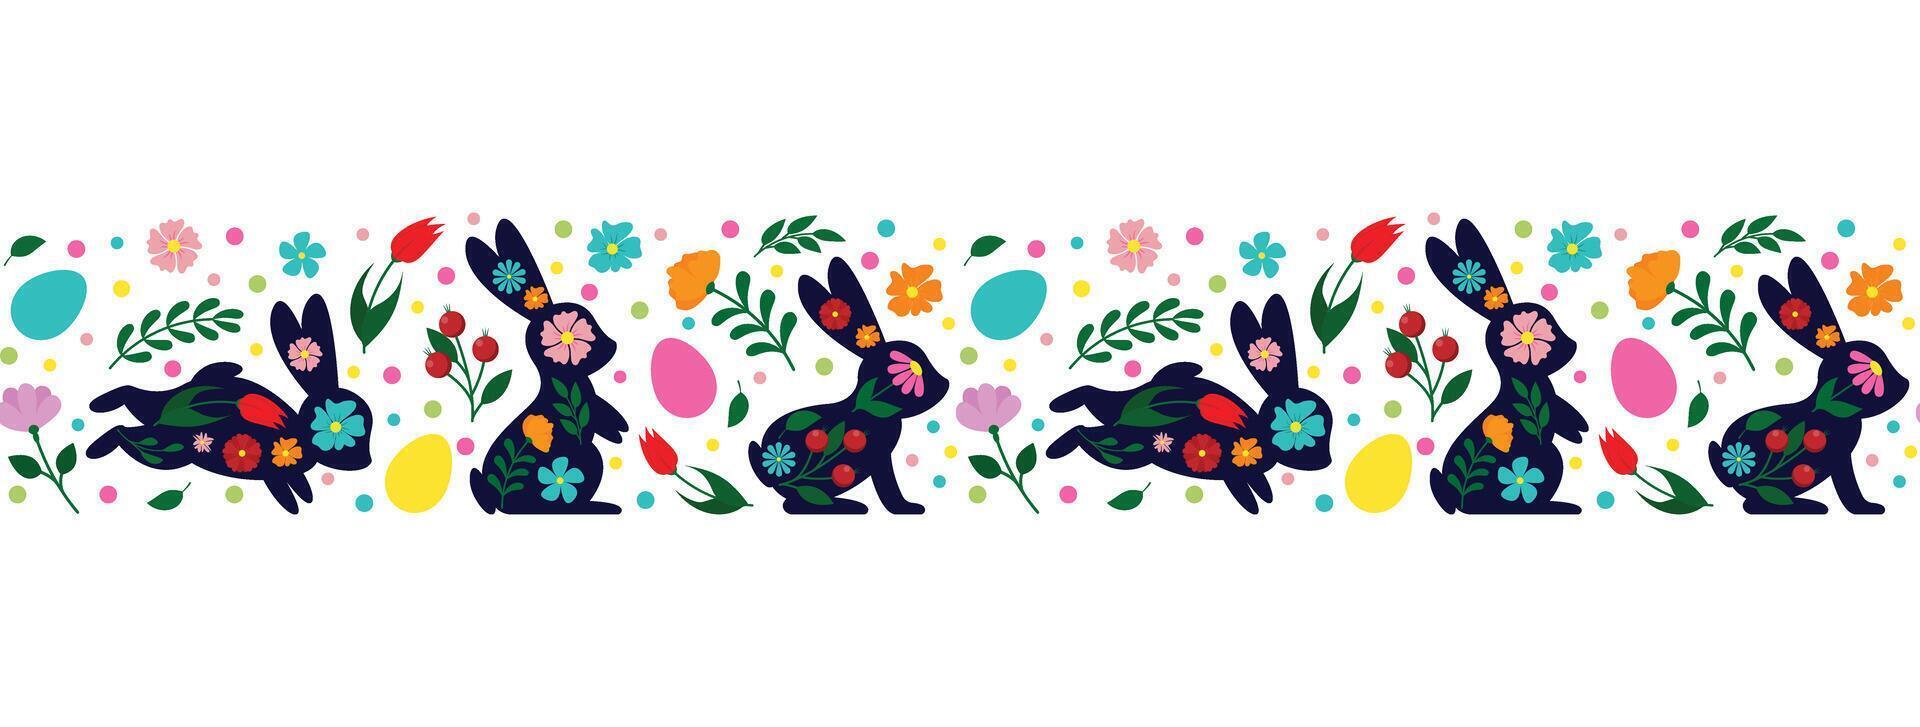 Lycklig påsk, dekorerad påsk kort, baner. kaniner, påsk ägg, blommor och korg. folk stil mönstrad design vektor